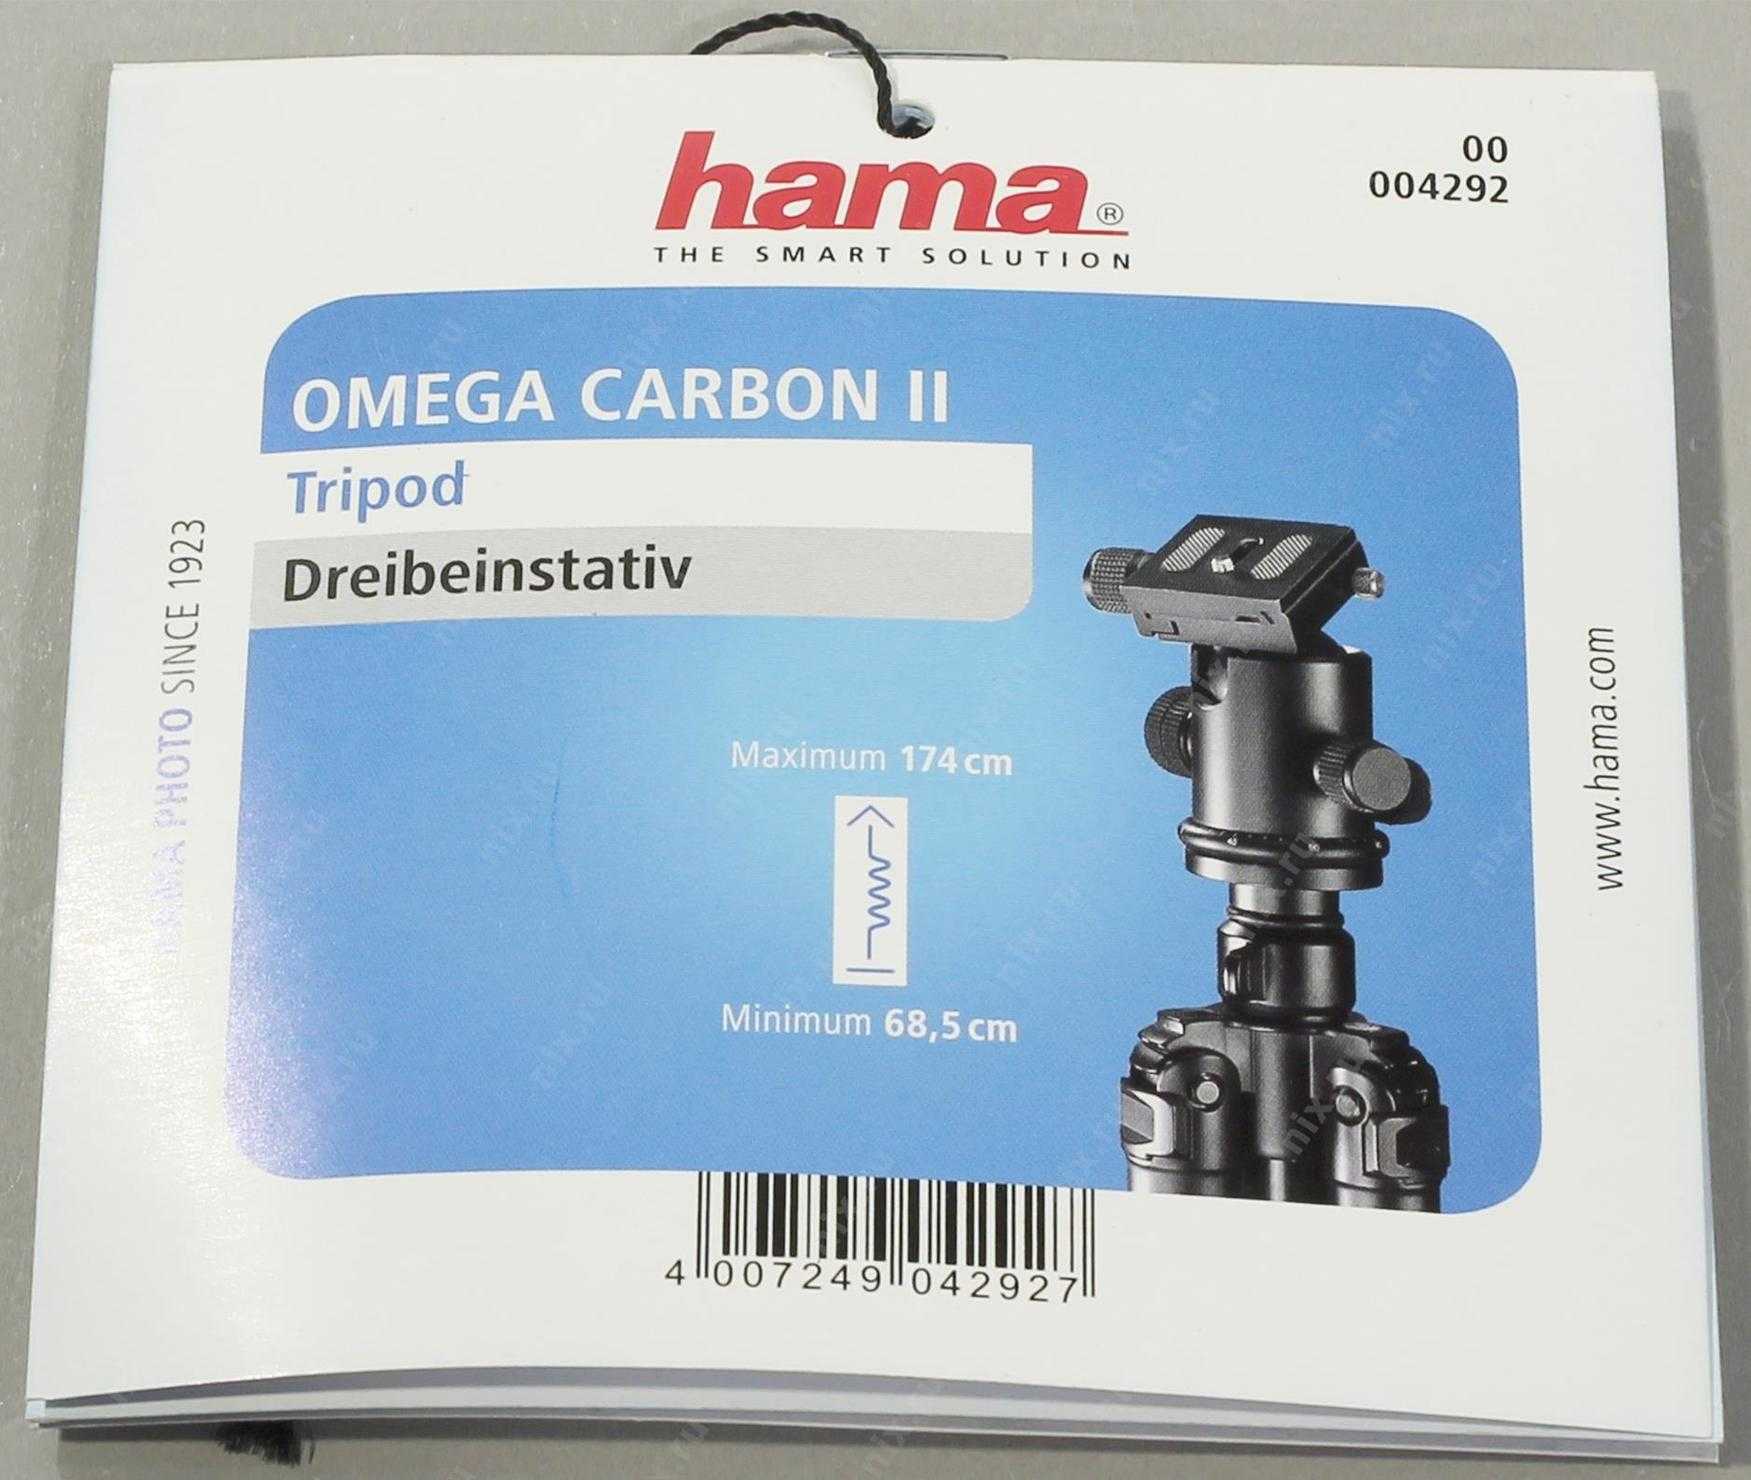 Hama omega carbon ii (04292) купить - ростов-на-дону по акционной цене , отзывы и обзоры.